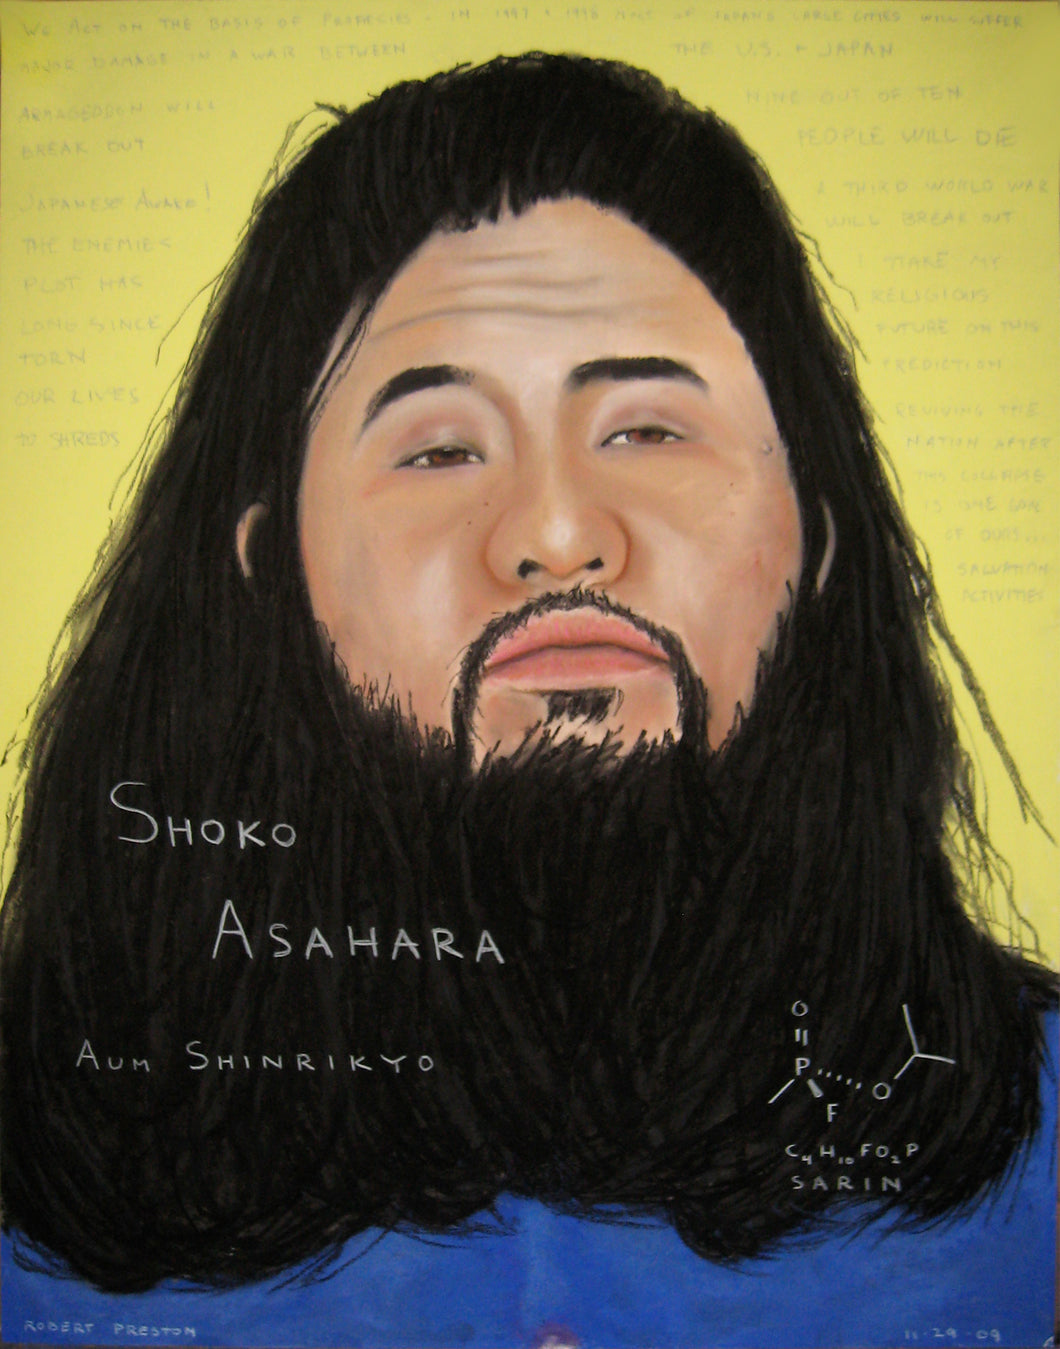 Shoko Asahara